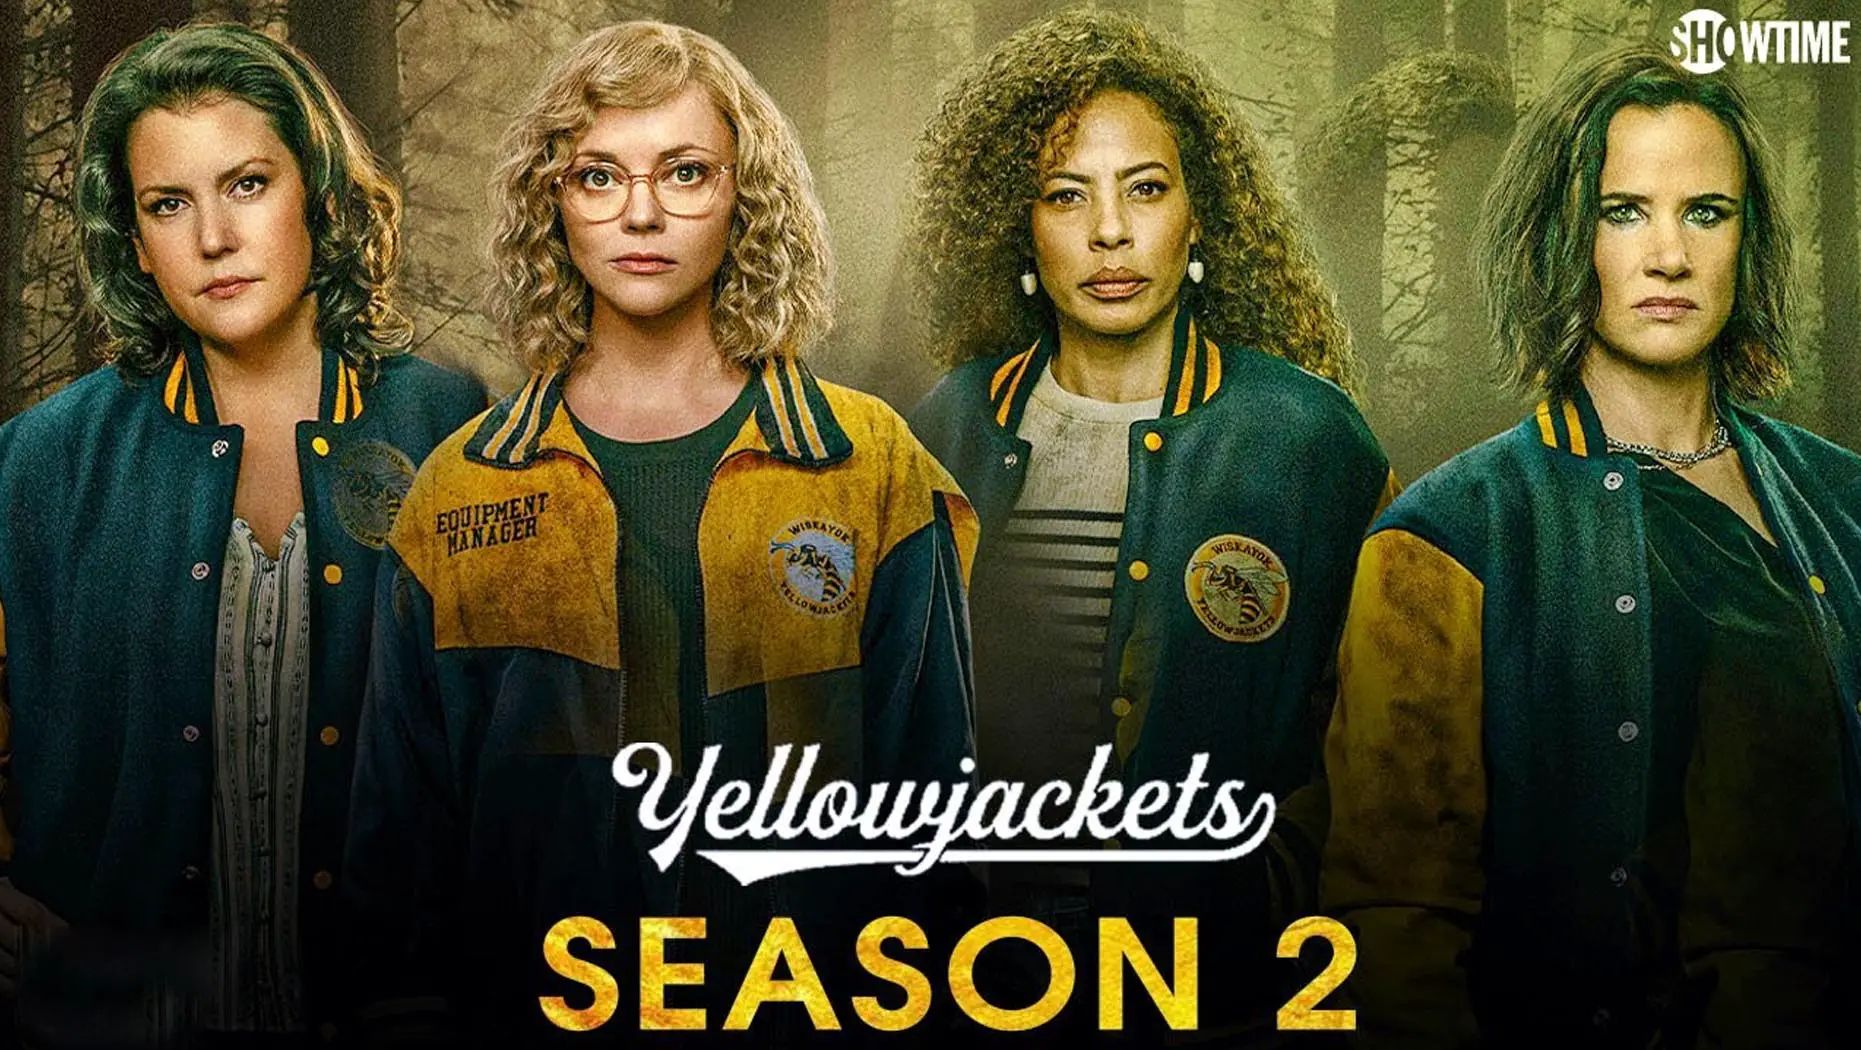 Yellowjackets Season 2 ep 1